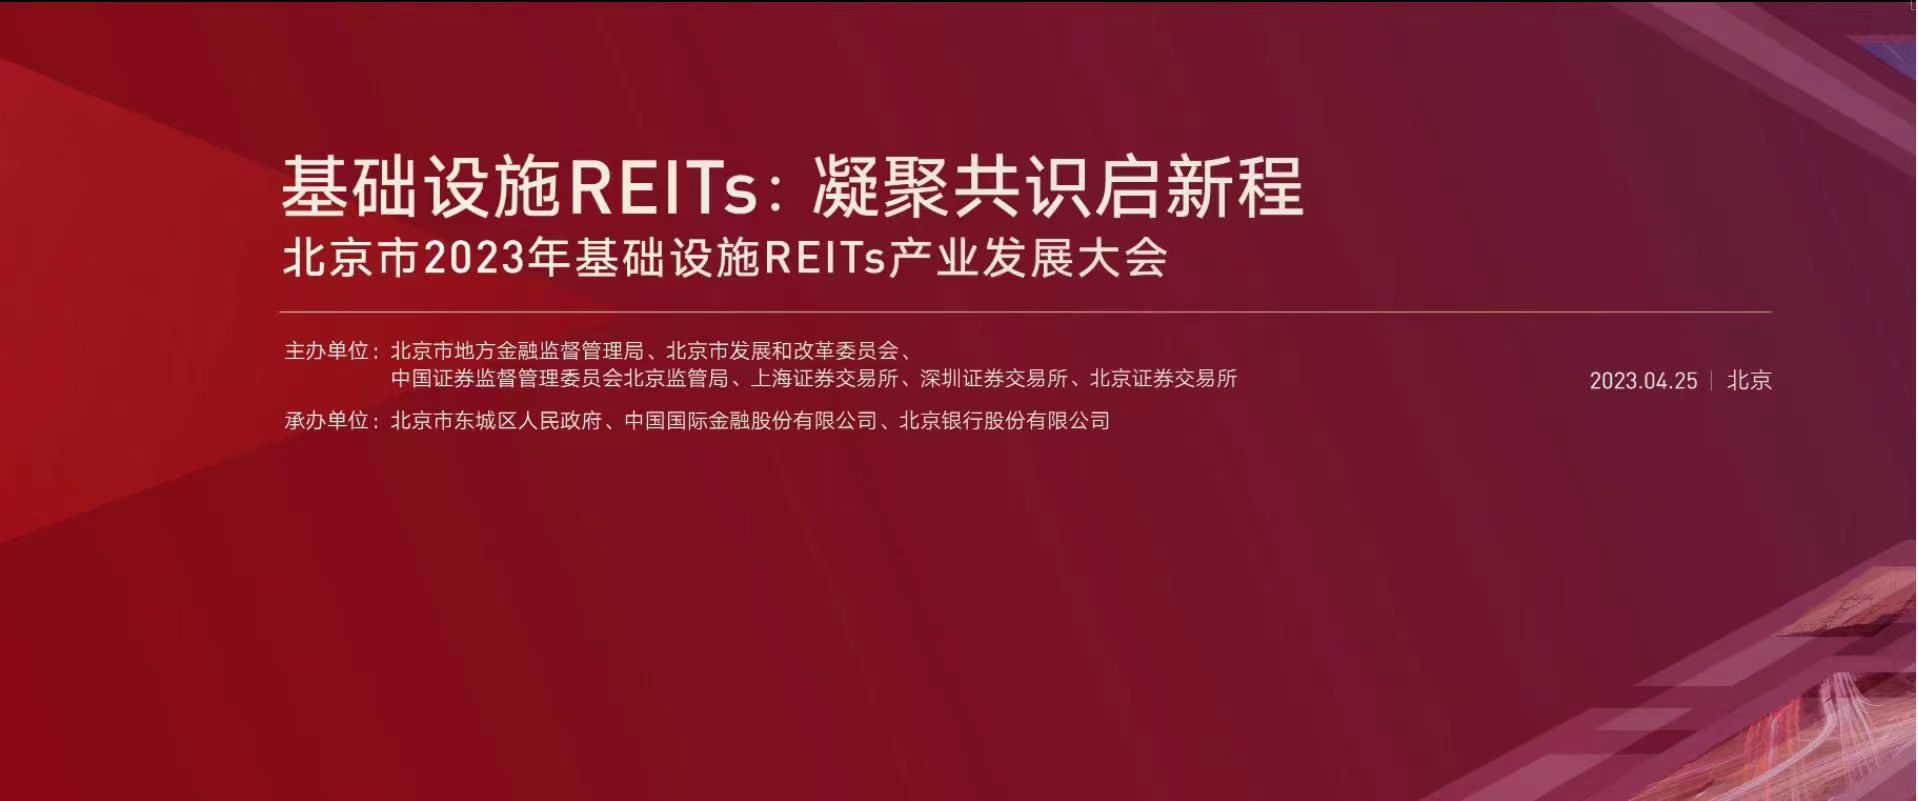 打造投行驱动的商业银行北京银行助力北京市2023年基础设施REITs产业